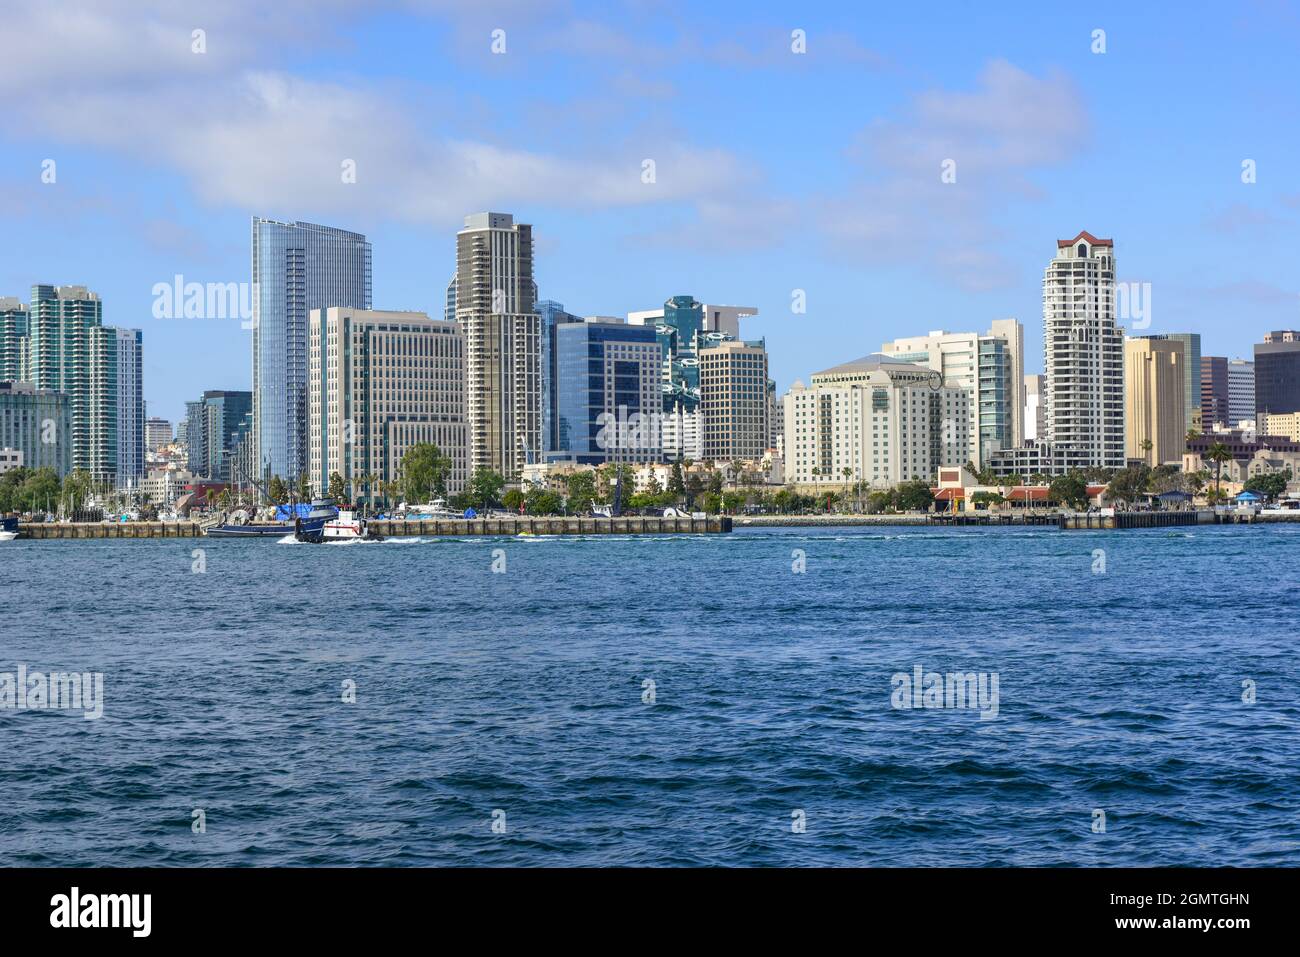 Eine beeindruckende Skyline der Innenstadt von San Diego mit modernen Hochhäusern, die von der San Diego Bay in der Nähe der Coronado Island in Südkalifornien aus gesehen werden Stockfoto